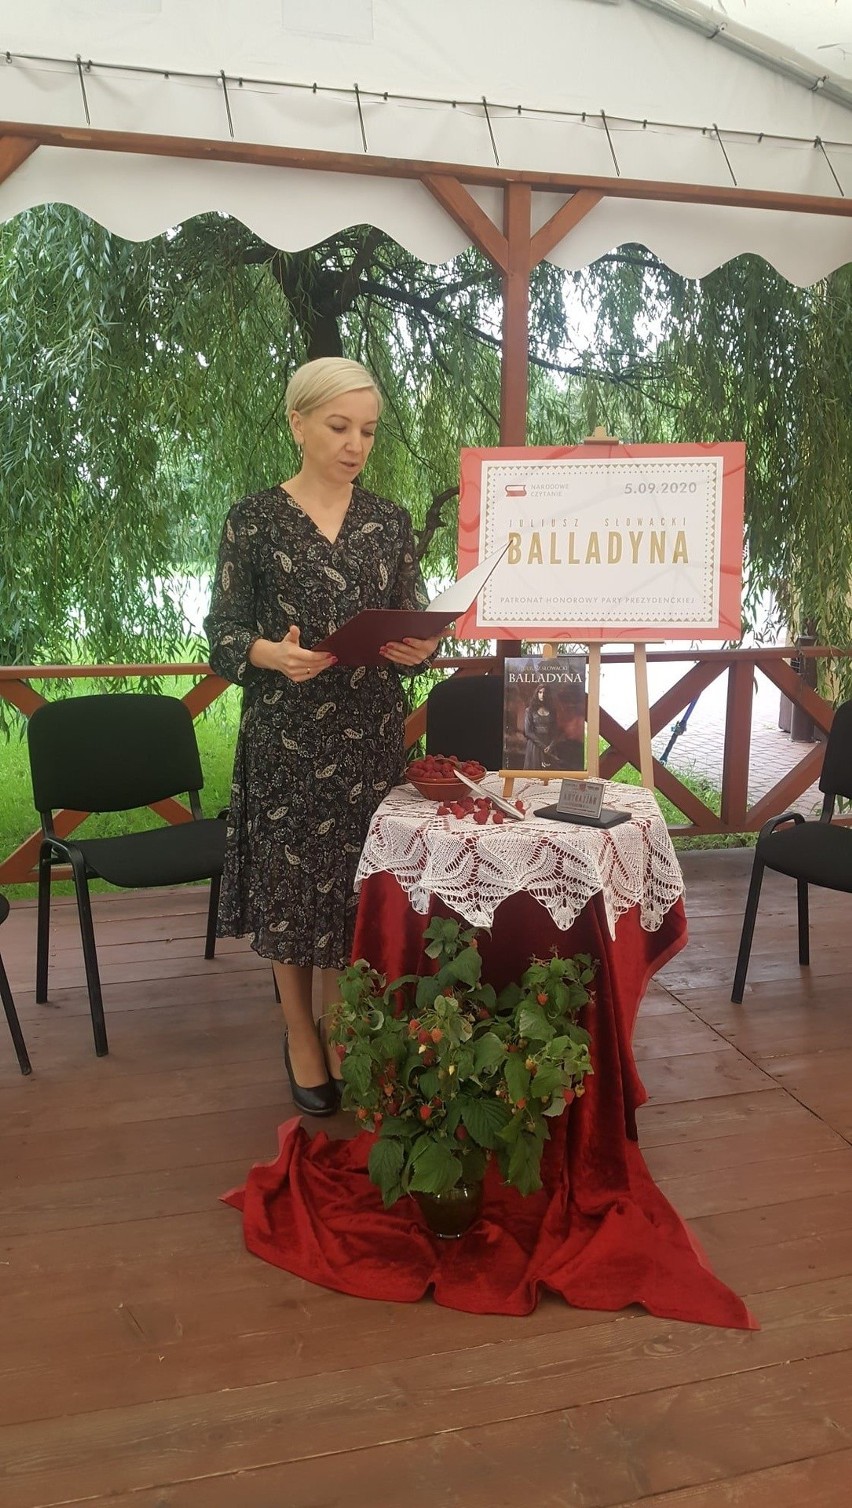 Narodowe czytanie "Balladyny" w Skaryszewie tym razem będzie w Internecie - skaryszewianie nagrali film